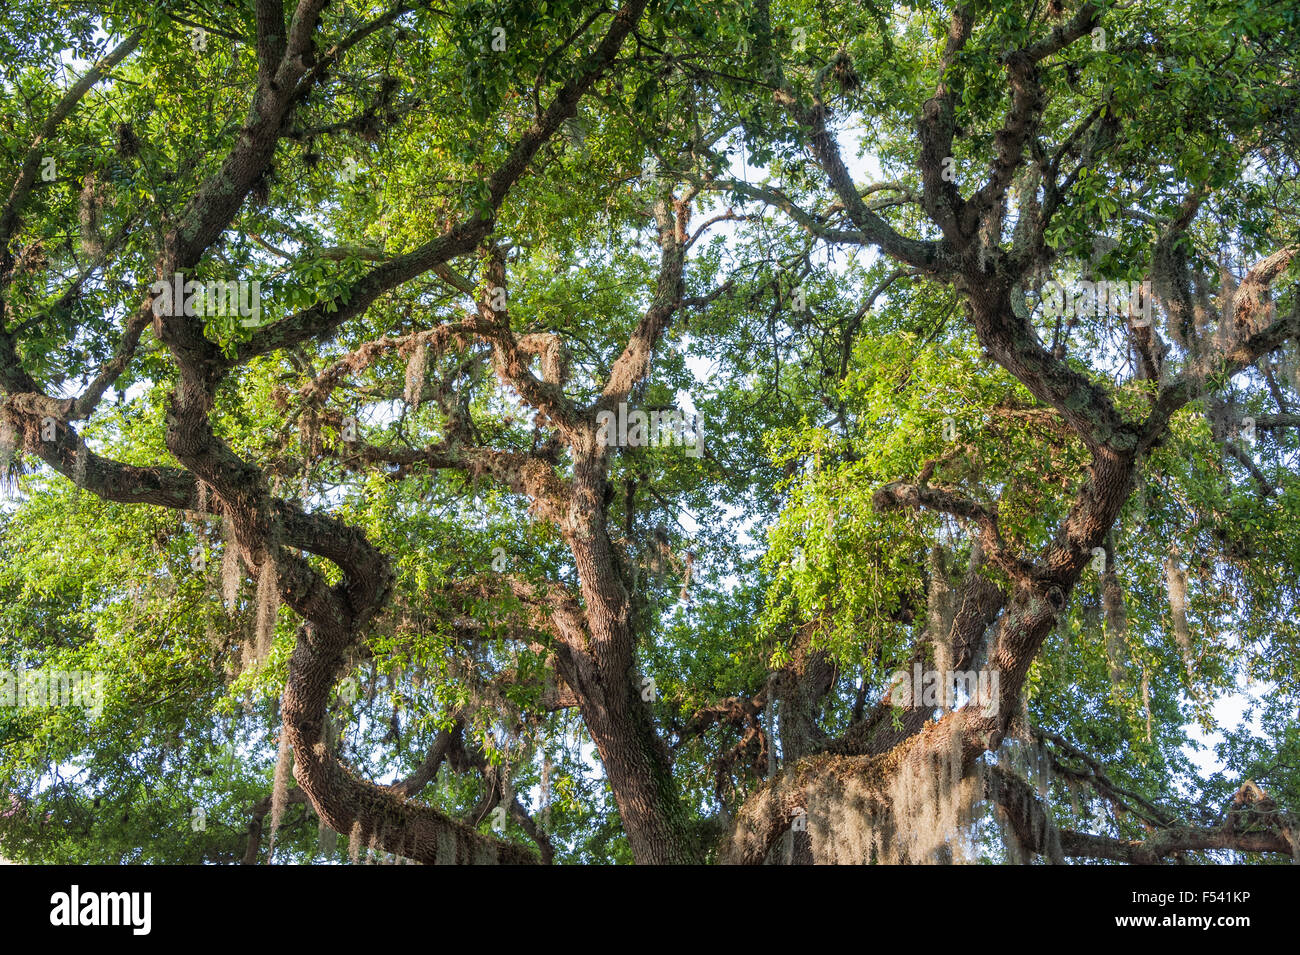 Florida Live Oak tree nella Città Vecchia di sant Agostino di Piazza della Costituzione. Stati Uniti d'America. Foto Stock